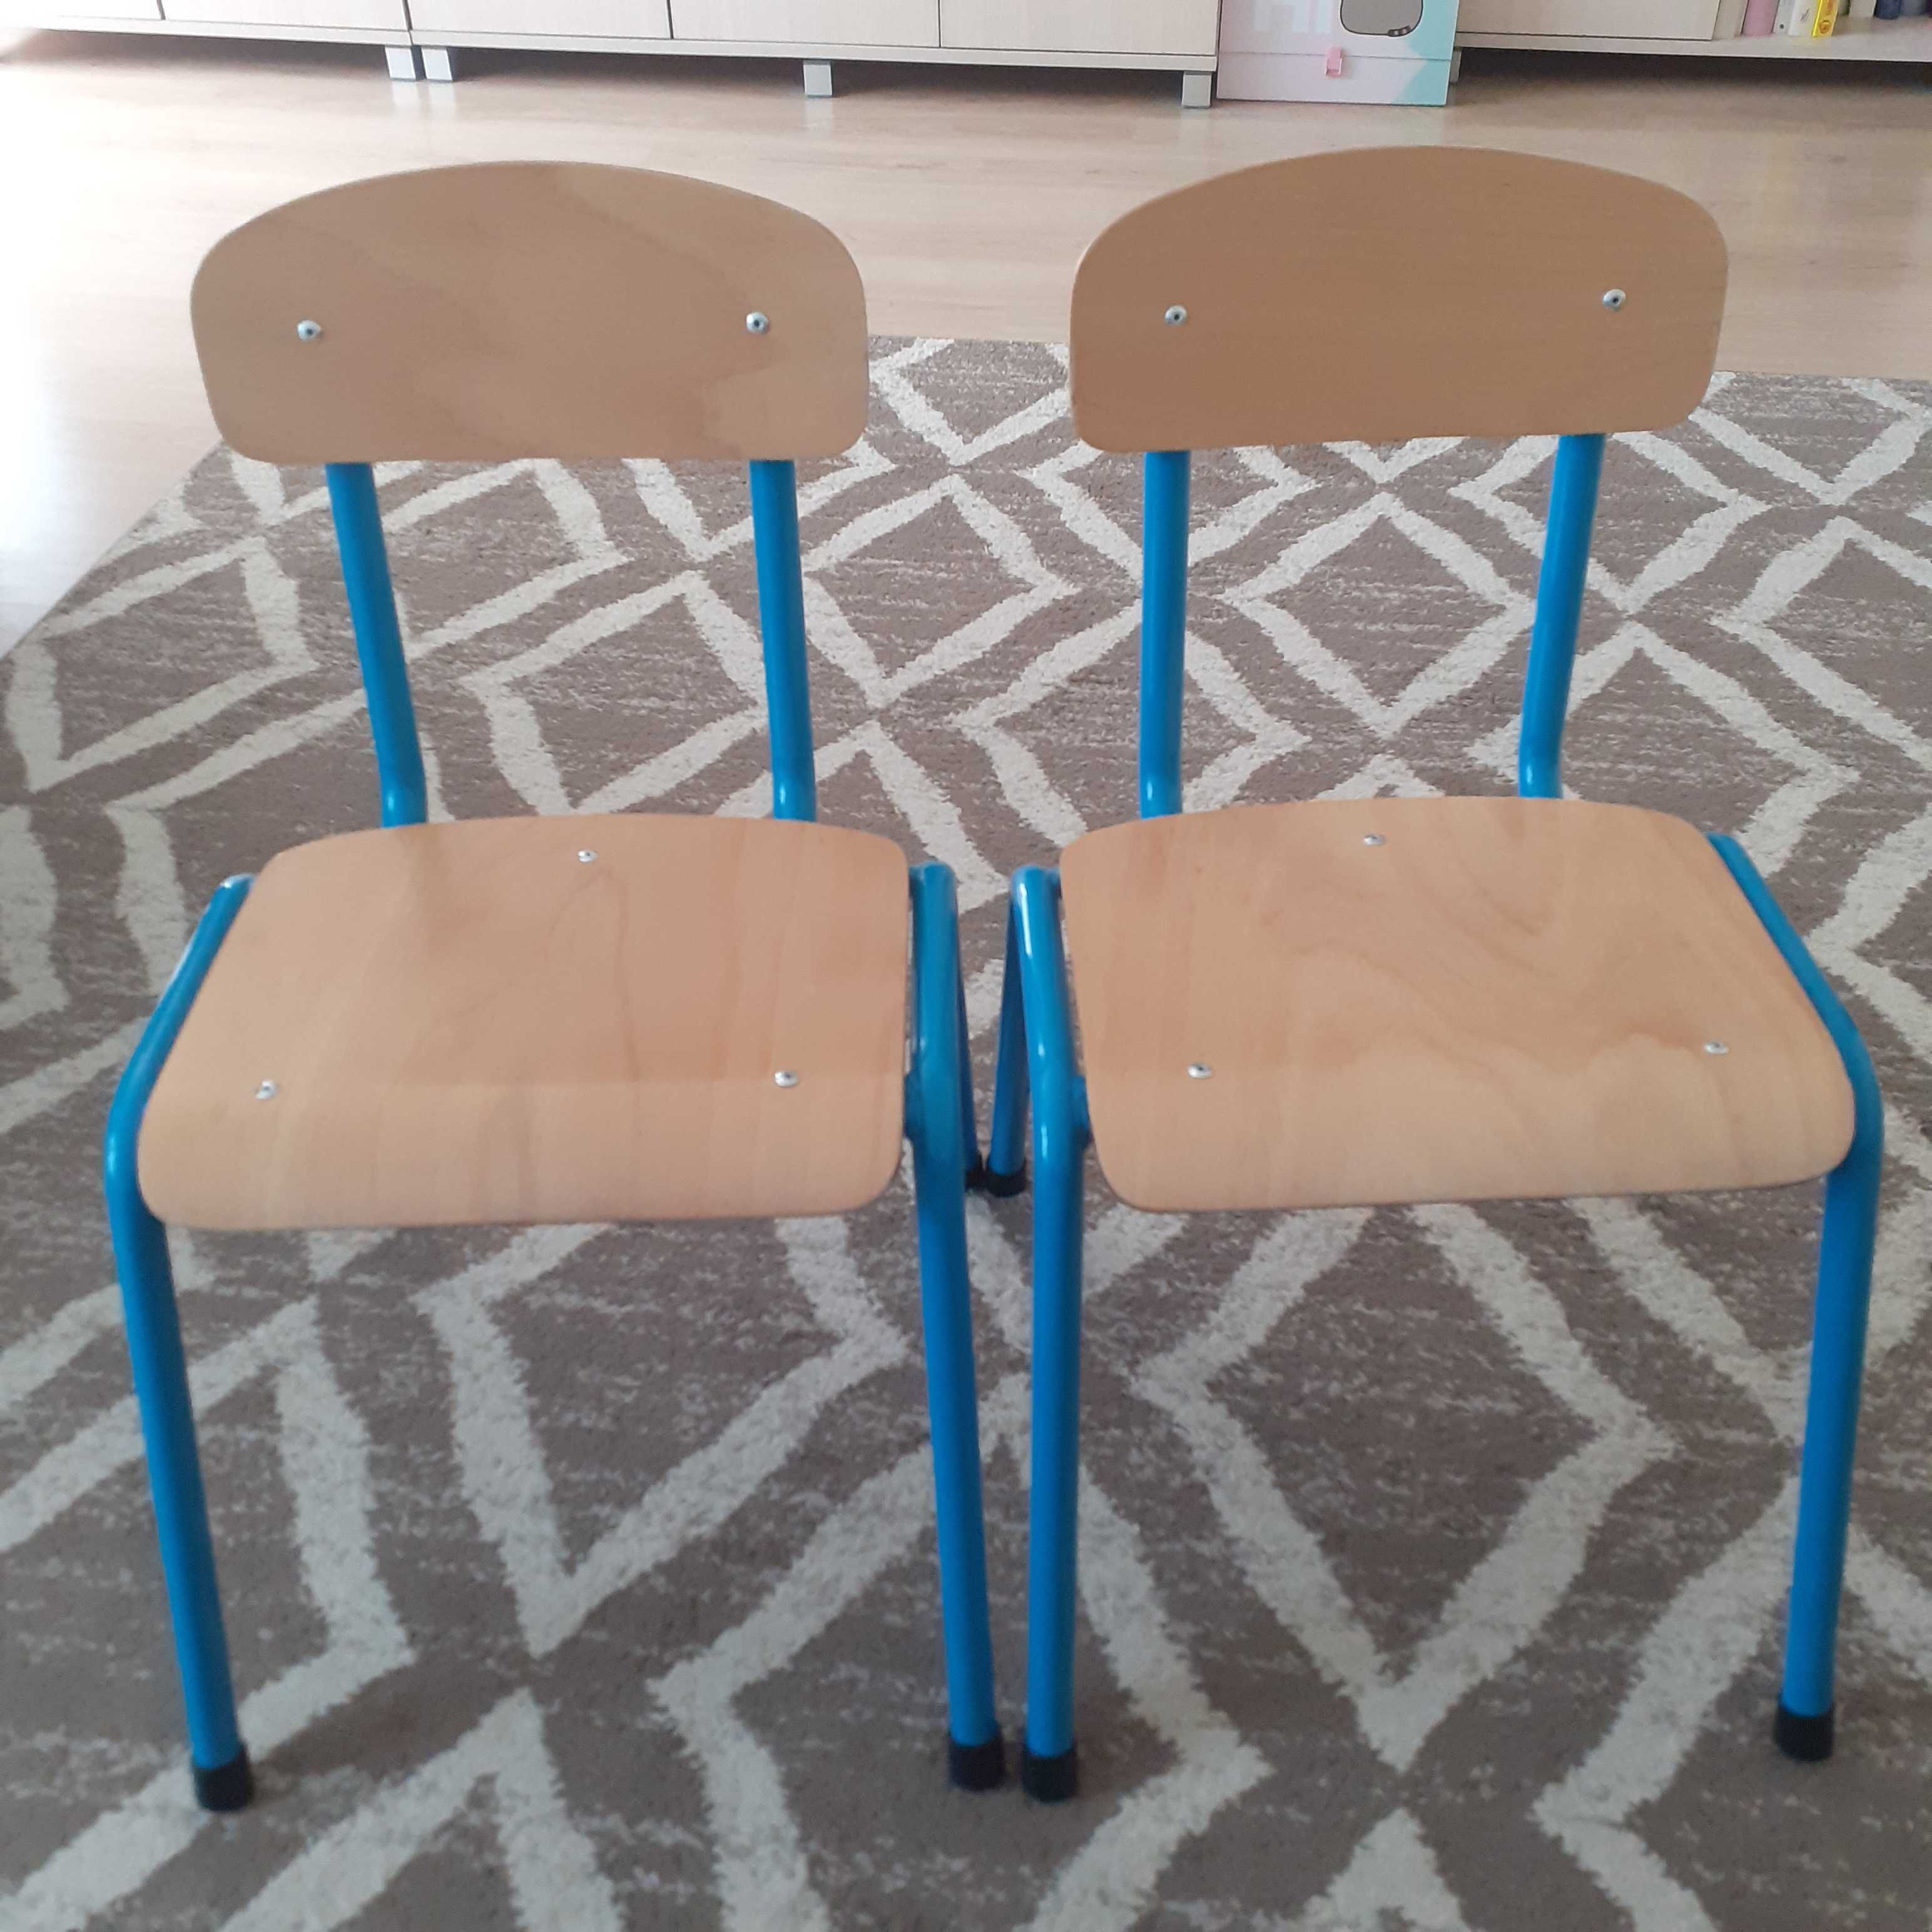 Stół i dwa krzesła